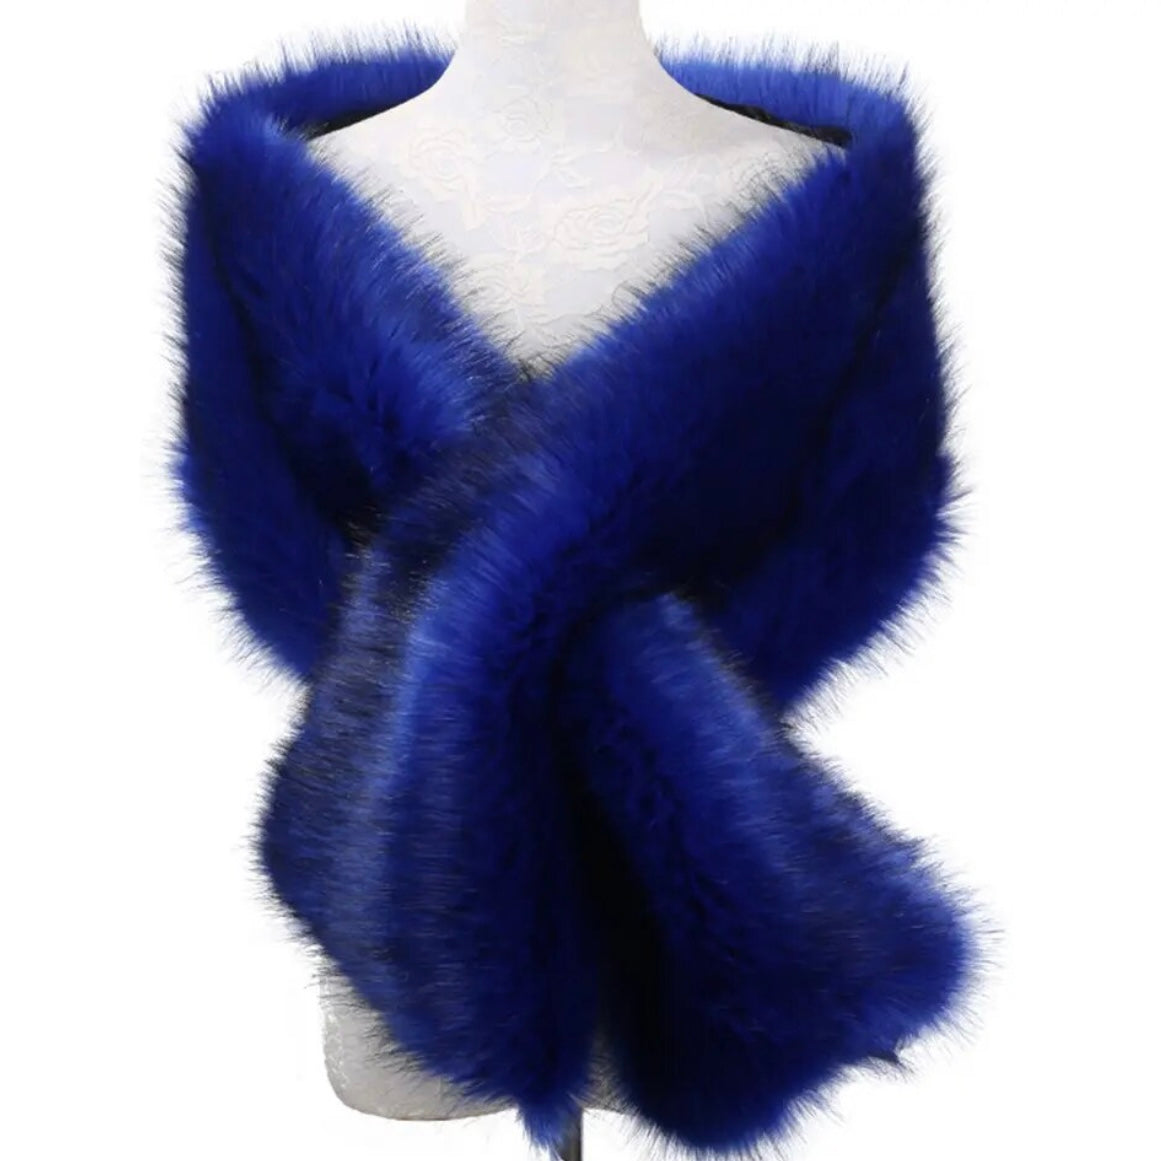 Great Gatsby 1920's Bridal Wedding Faux Fur Shawl Wrap - Royal Blue